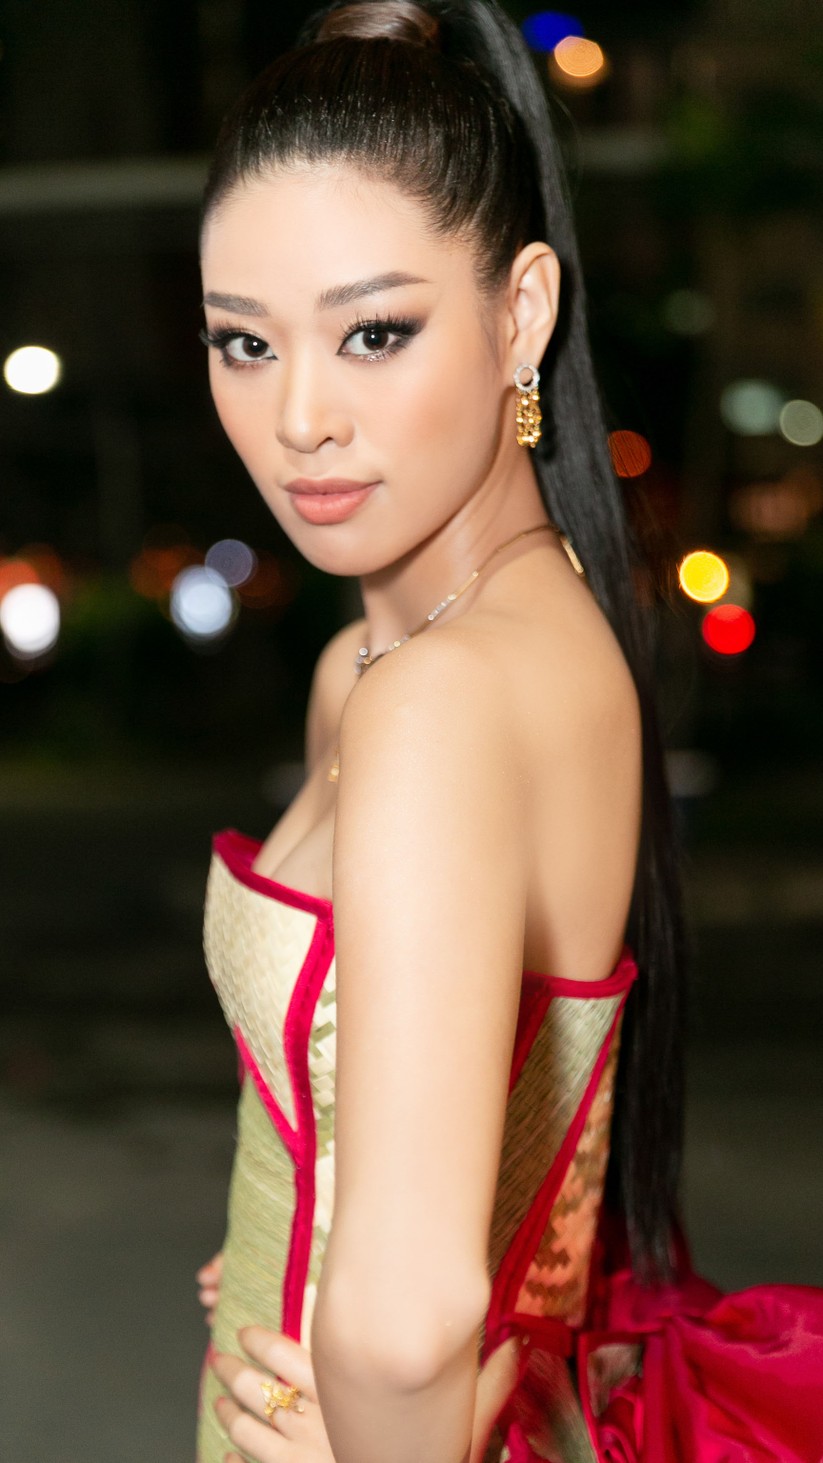 Hoa hậu Khánh Vân mặc trang phục với thông điệp bảo vệ làng nghề làm chiếu - ảnh 2